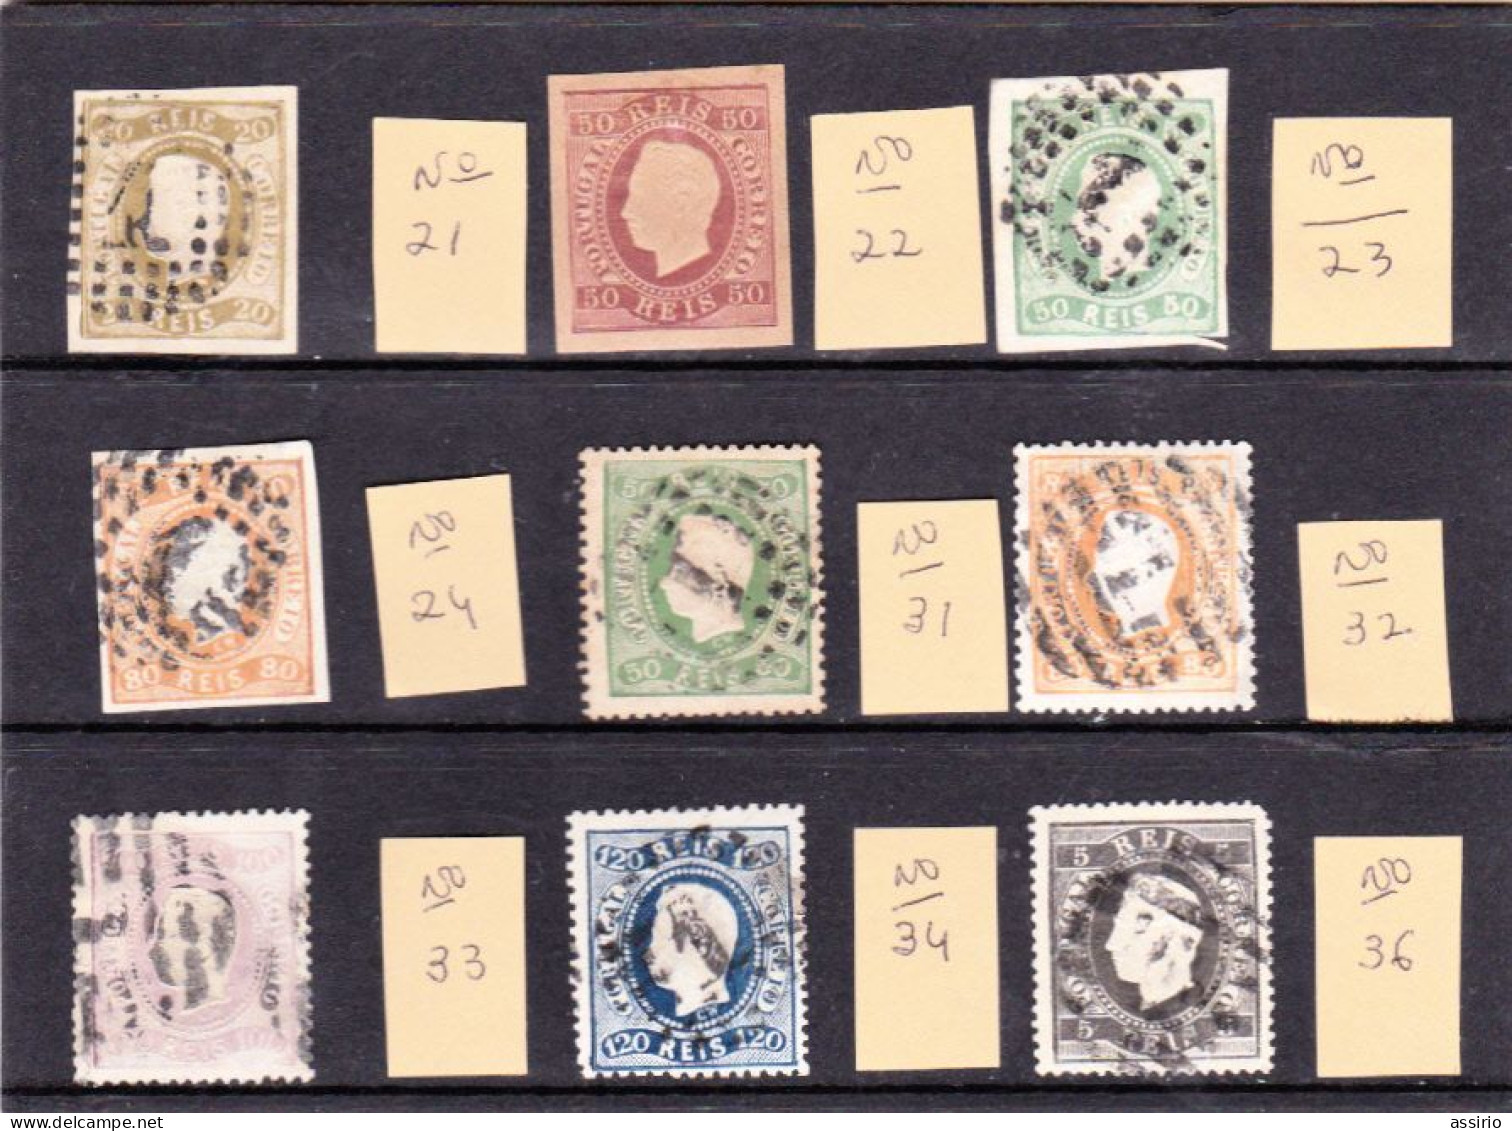 Portugal - Marcofilia   9 Selos   - Um Tem Ligeiro Vestigio De Charneira    - Lote Muito Bom - Postmark Collection